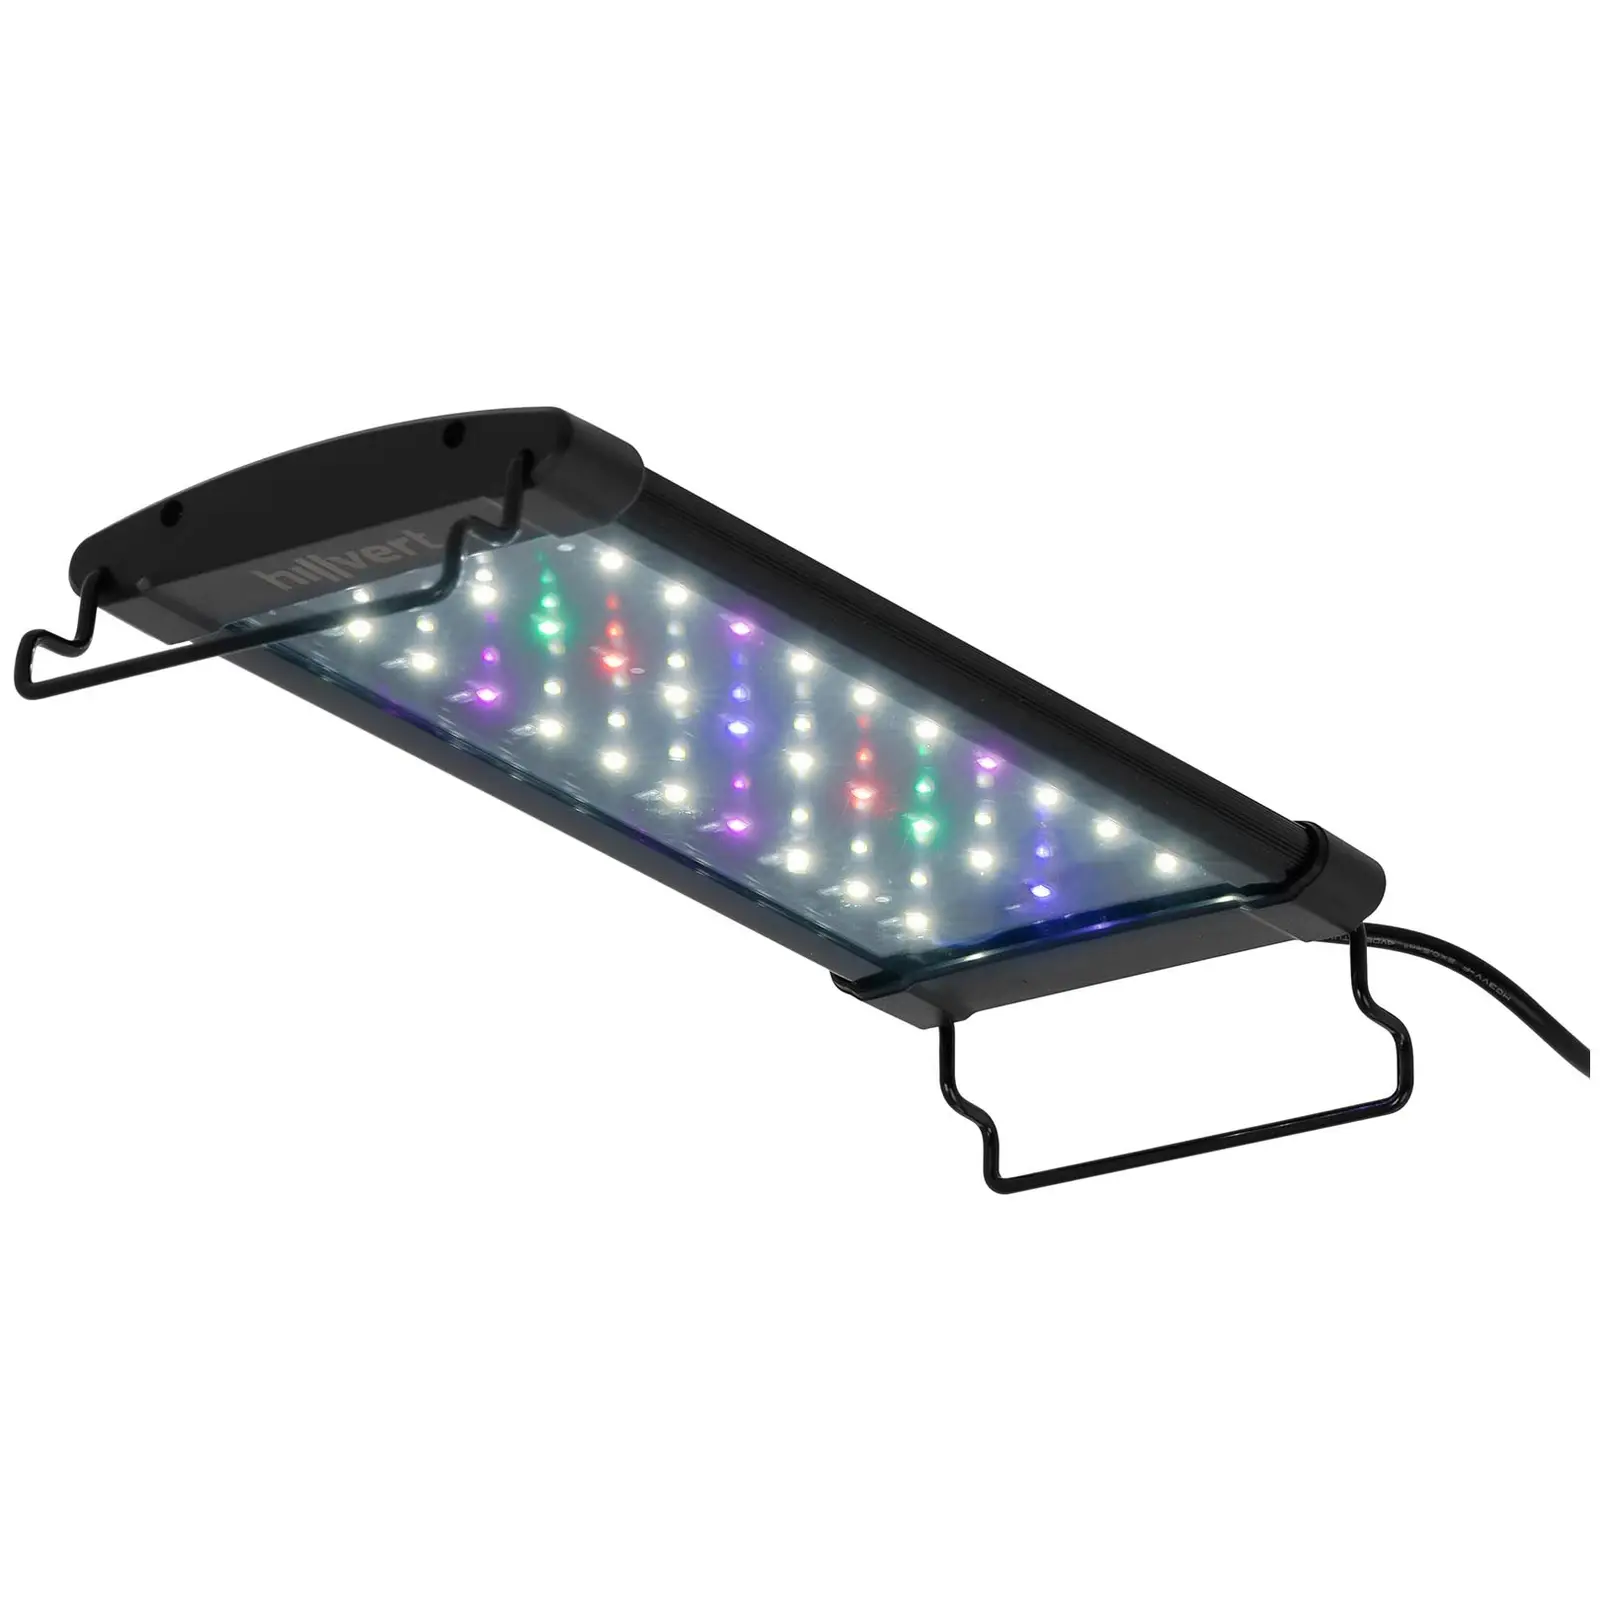 B-varer LED akvariebelysning - 33 LED - 6 B - 30 cm